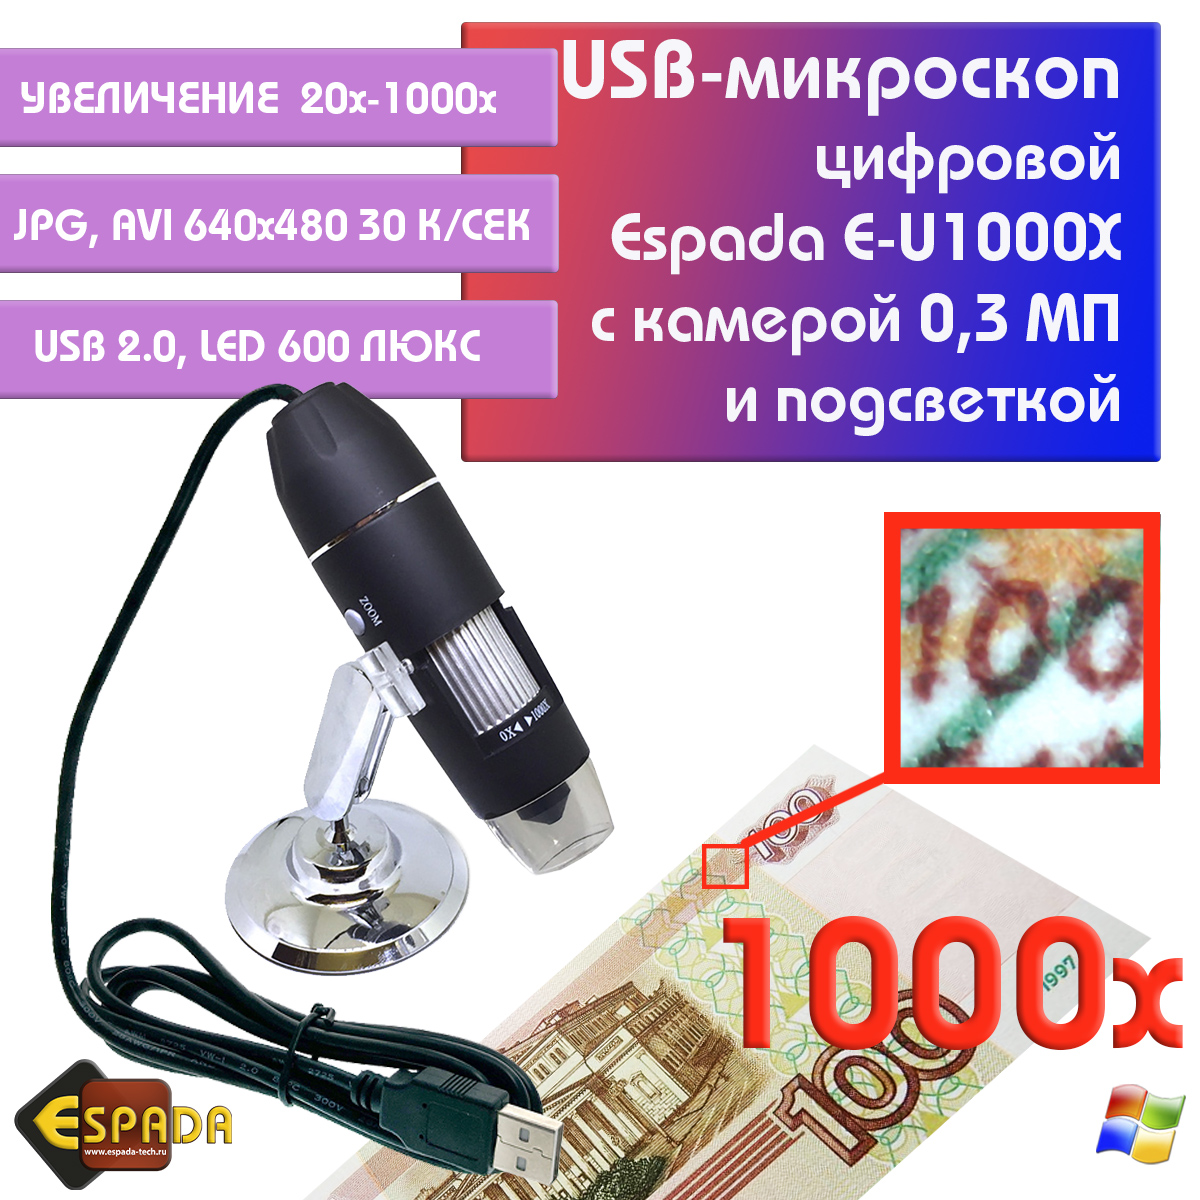 Портативный цифровой USB-микроскоп Espada E-U1000X c камерой 0,3 МП и увеличением 1000x видеокарта gigabyte geforce gtx 1650 d6 4g gv n1656d6 4gd 2 0